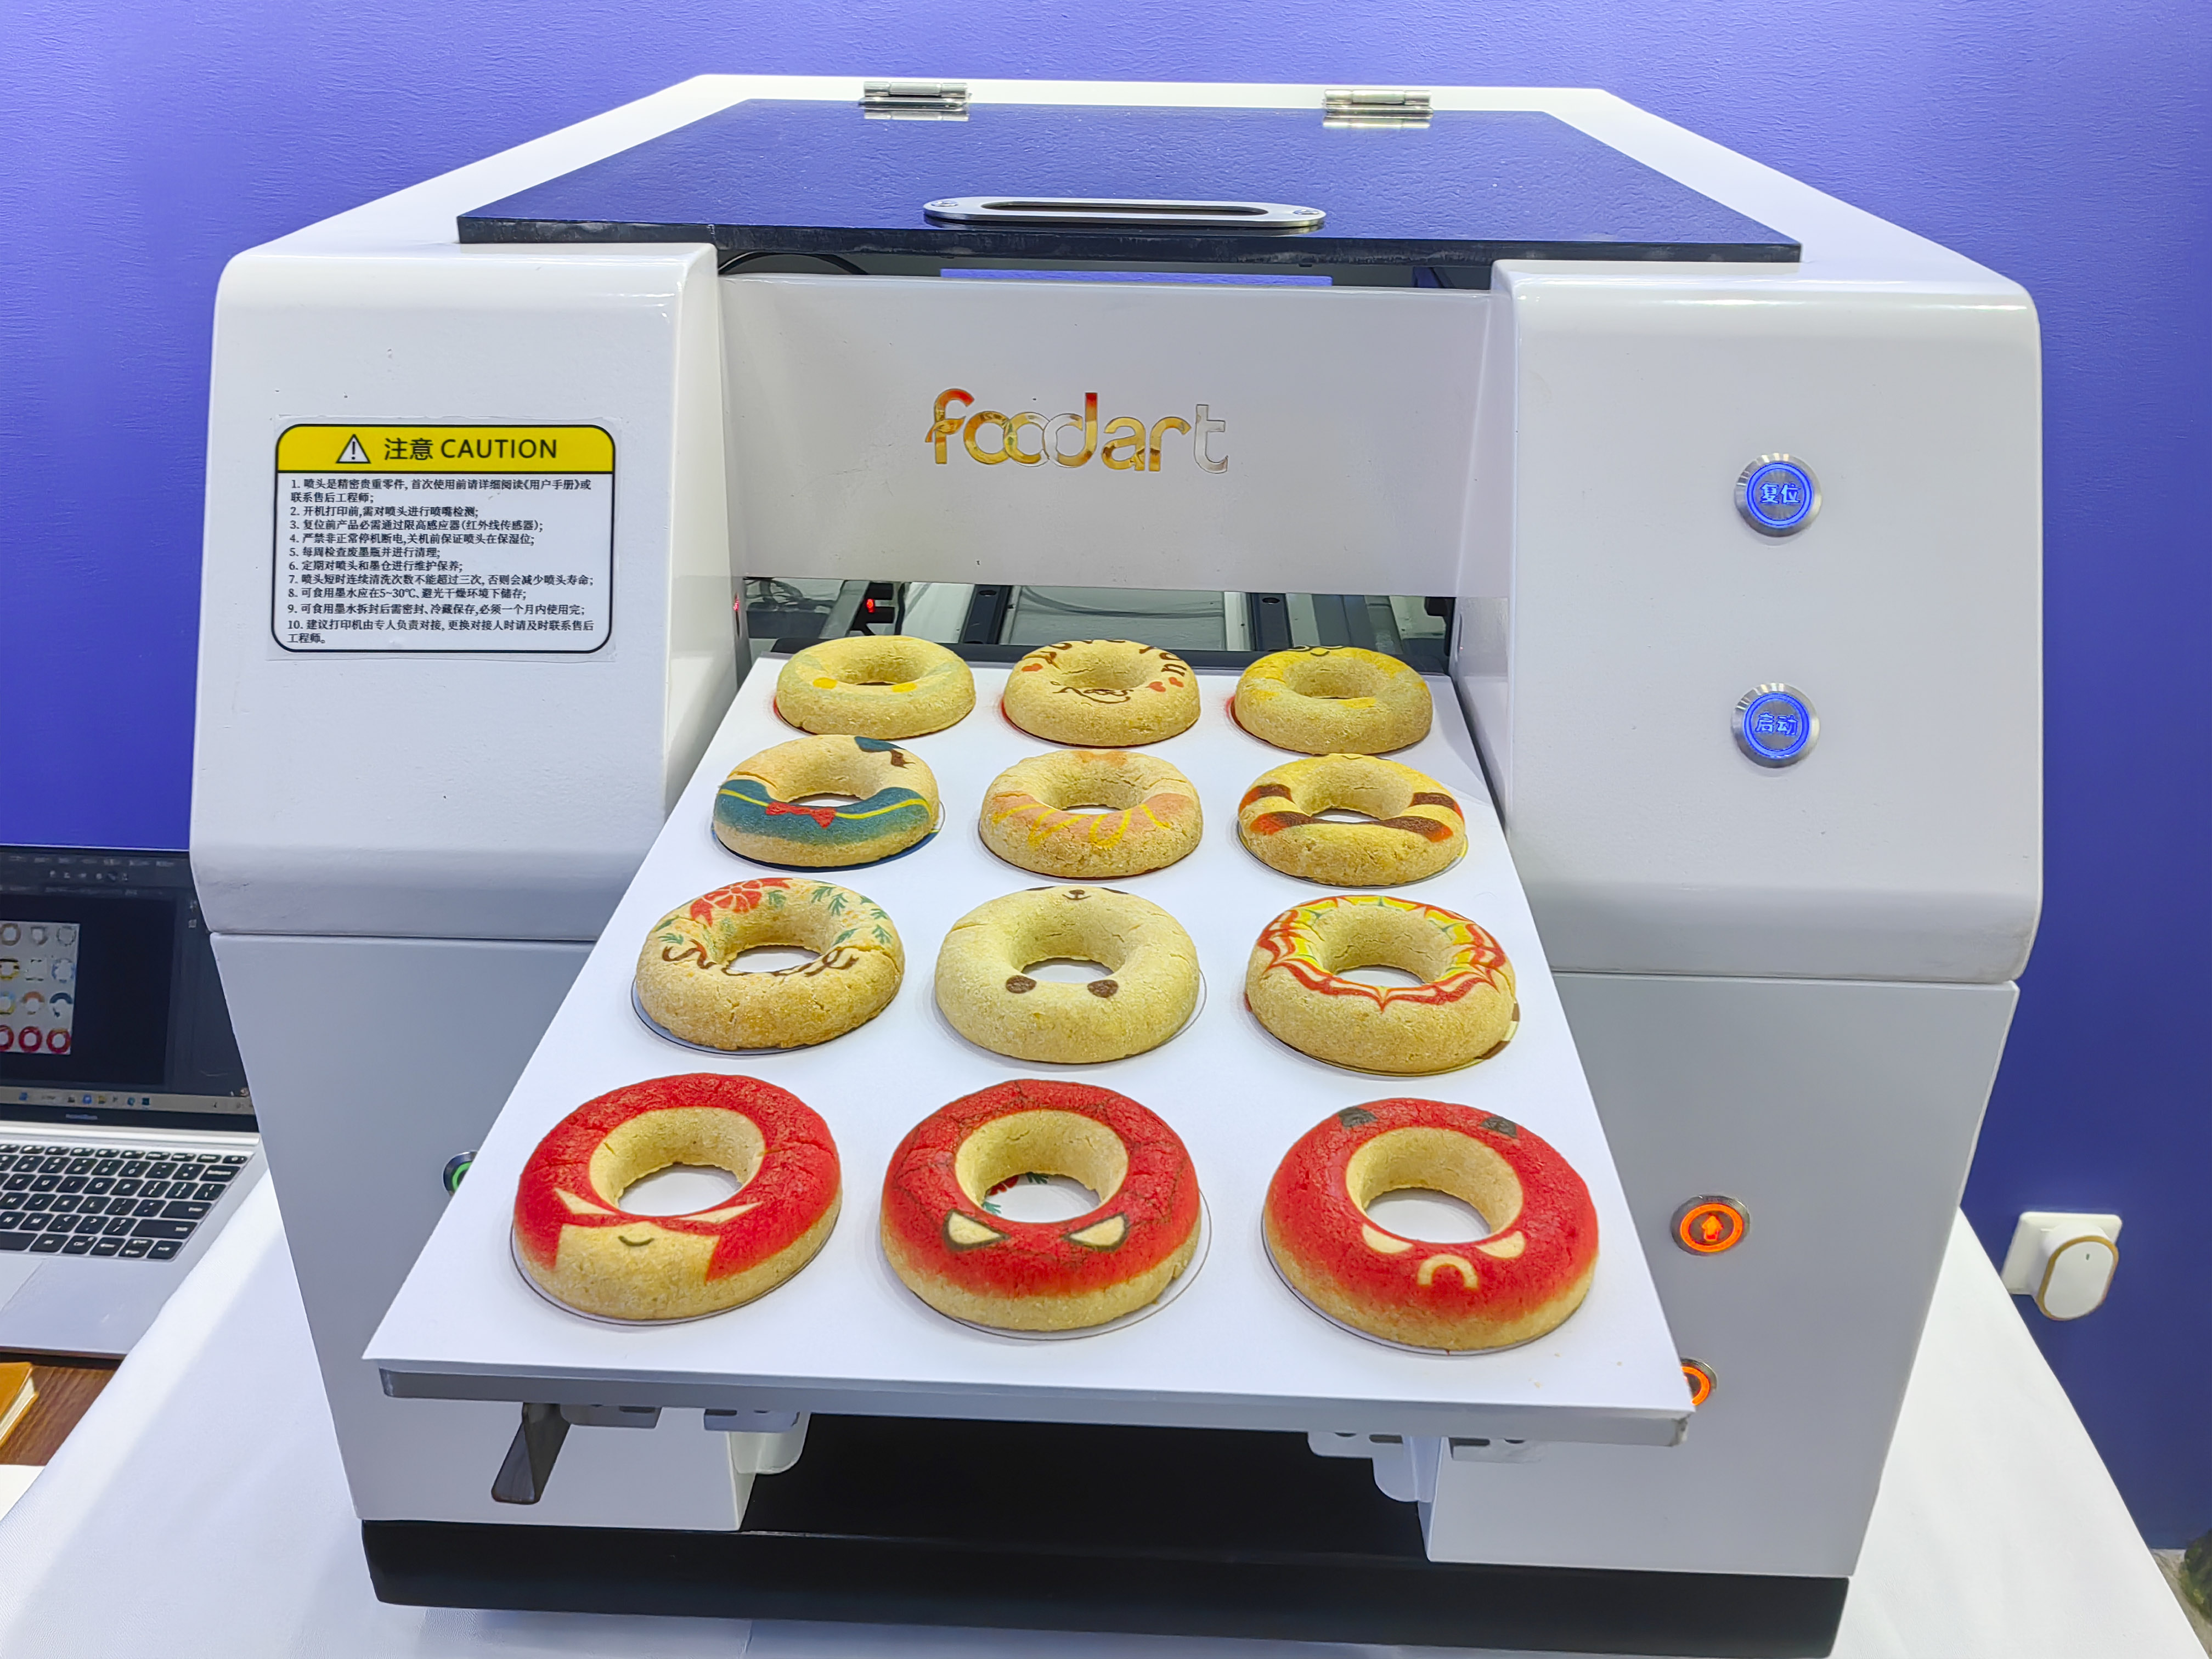 Технология пищевой печати новая машина для печати для печати креативного круга печенья, чтобы вы могли увидеть круг